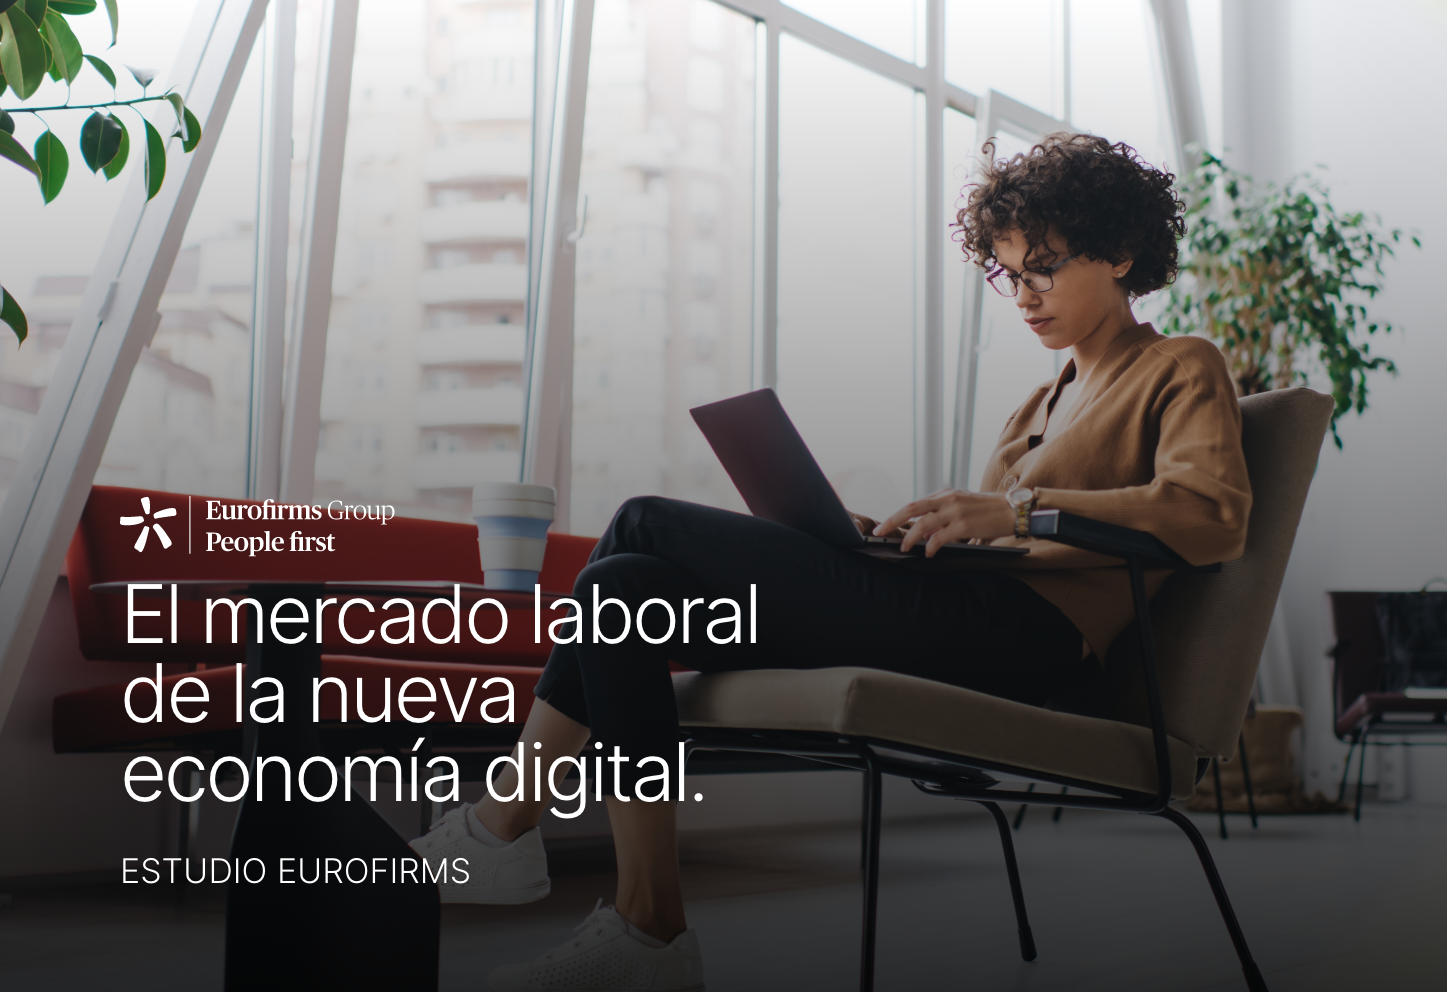 Eurofirms Group publica el estudio “El mercado laboral de la nueva economía digital”